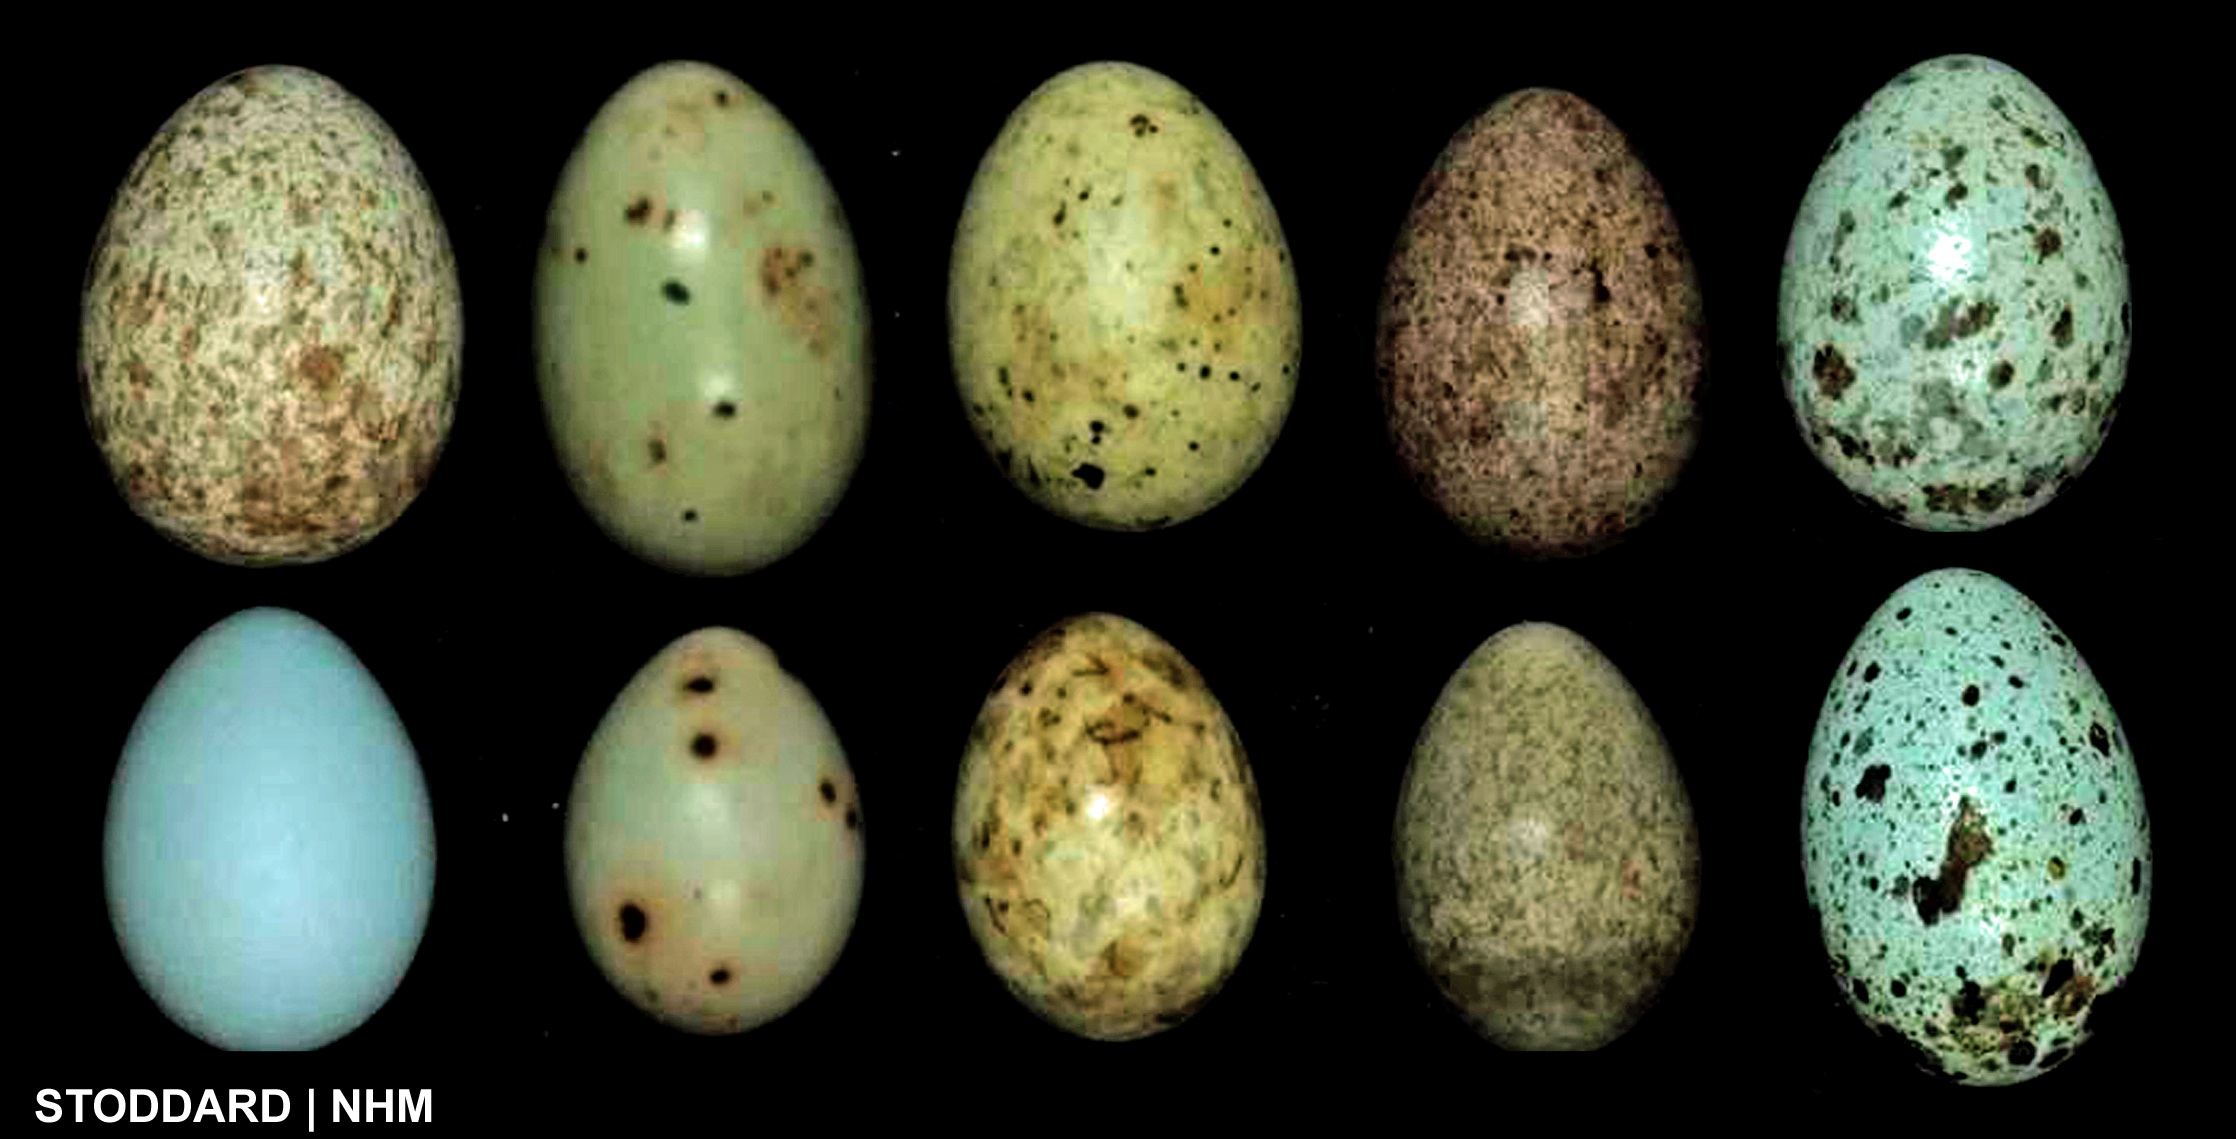 Пестрые яйца. Кукушкино яйцо. Яйцо зеленое в крапинку. Пятнистые яйца птиц. Яйца птицы зеленые в крапинку.